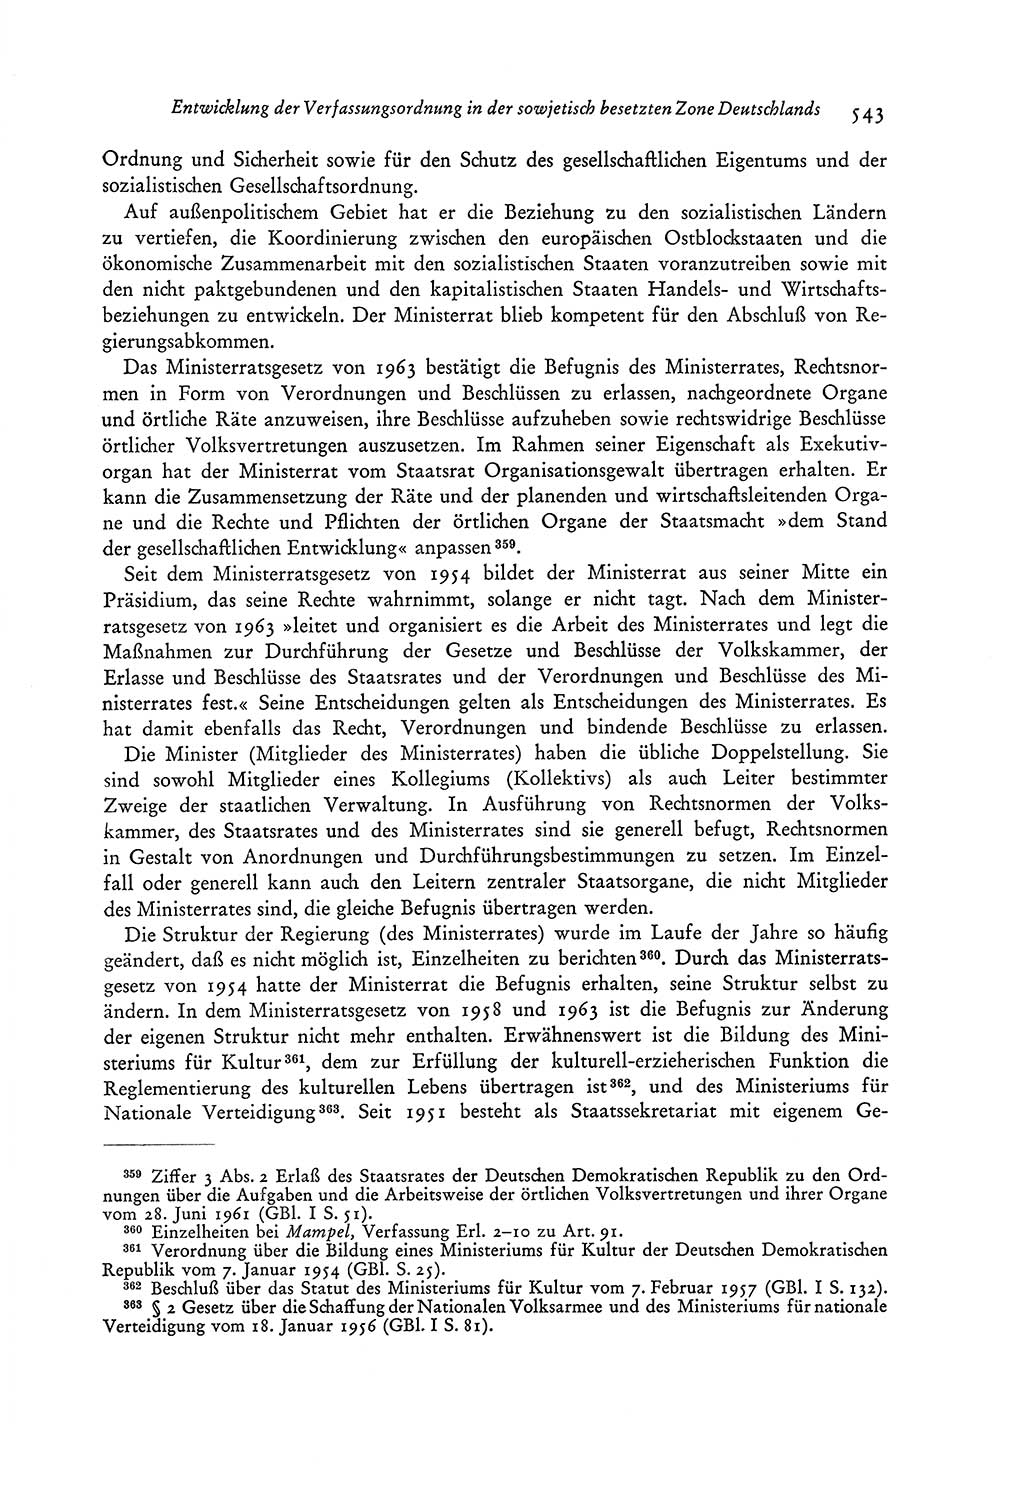 Entwicklung der Verfassungsordnung in der Sowjetzone Deutschlands [Sowjetische Besatzungszone (SBZ) Deutschlands, Deutsche Demokratische Republik (DDR)] 1945-1963, Seite 582 (Entw. VerfOrdn. SBZ DDR 1945-1963, S. 582)